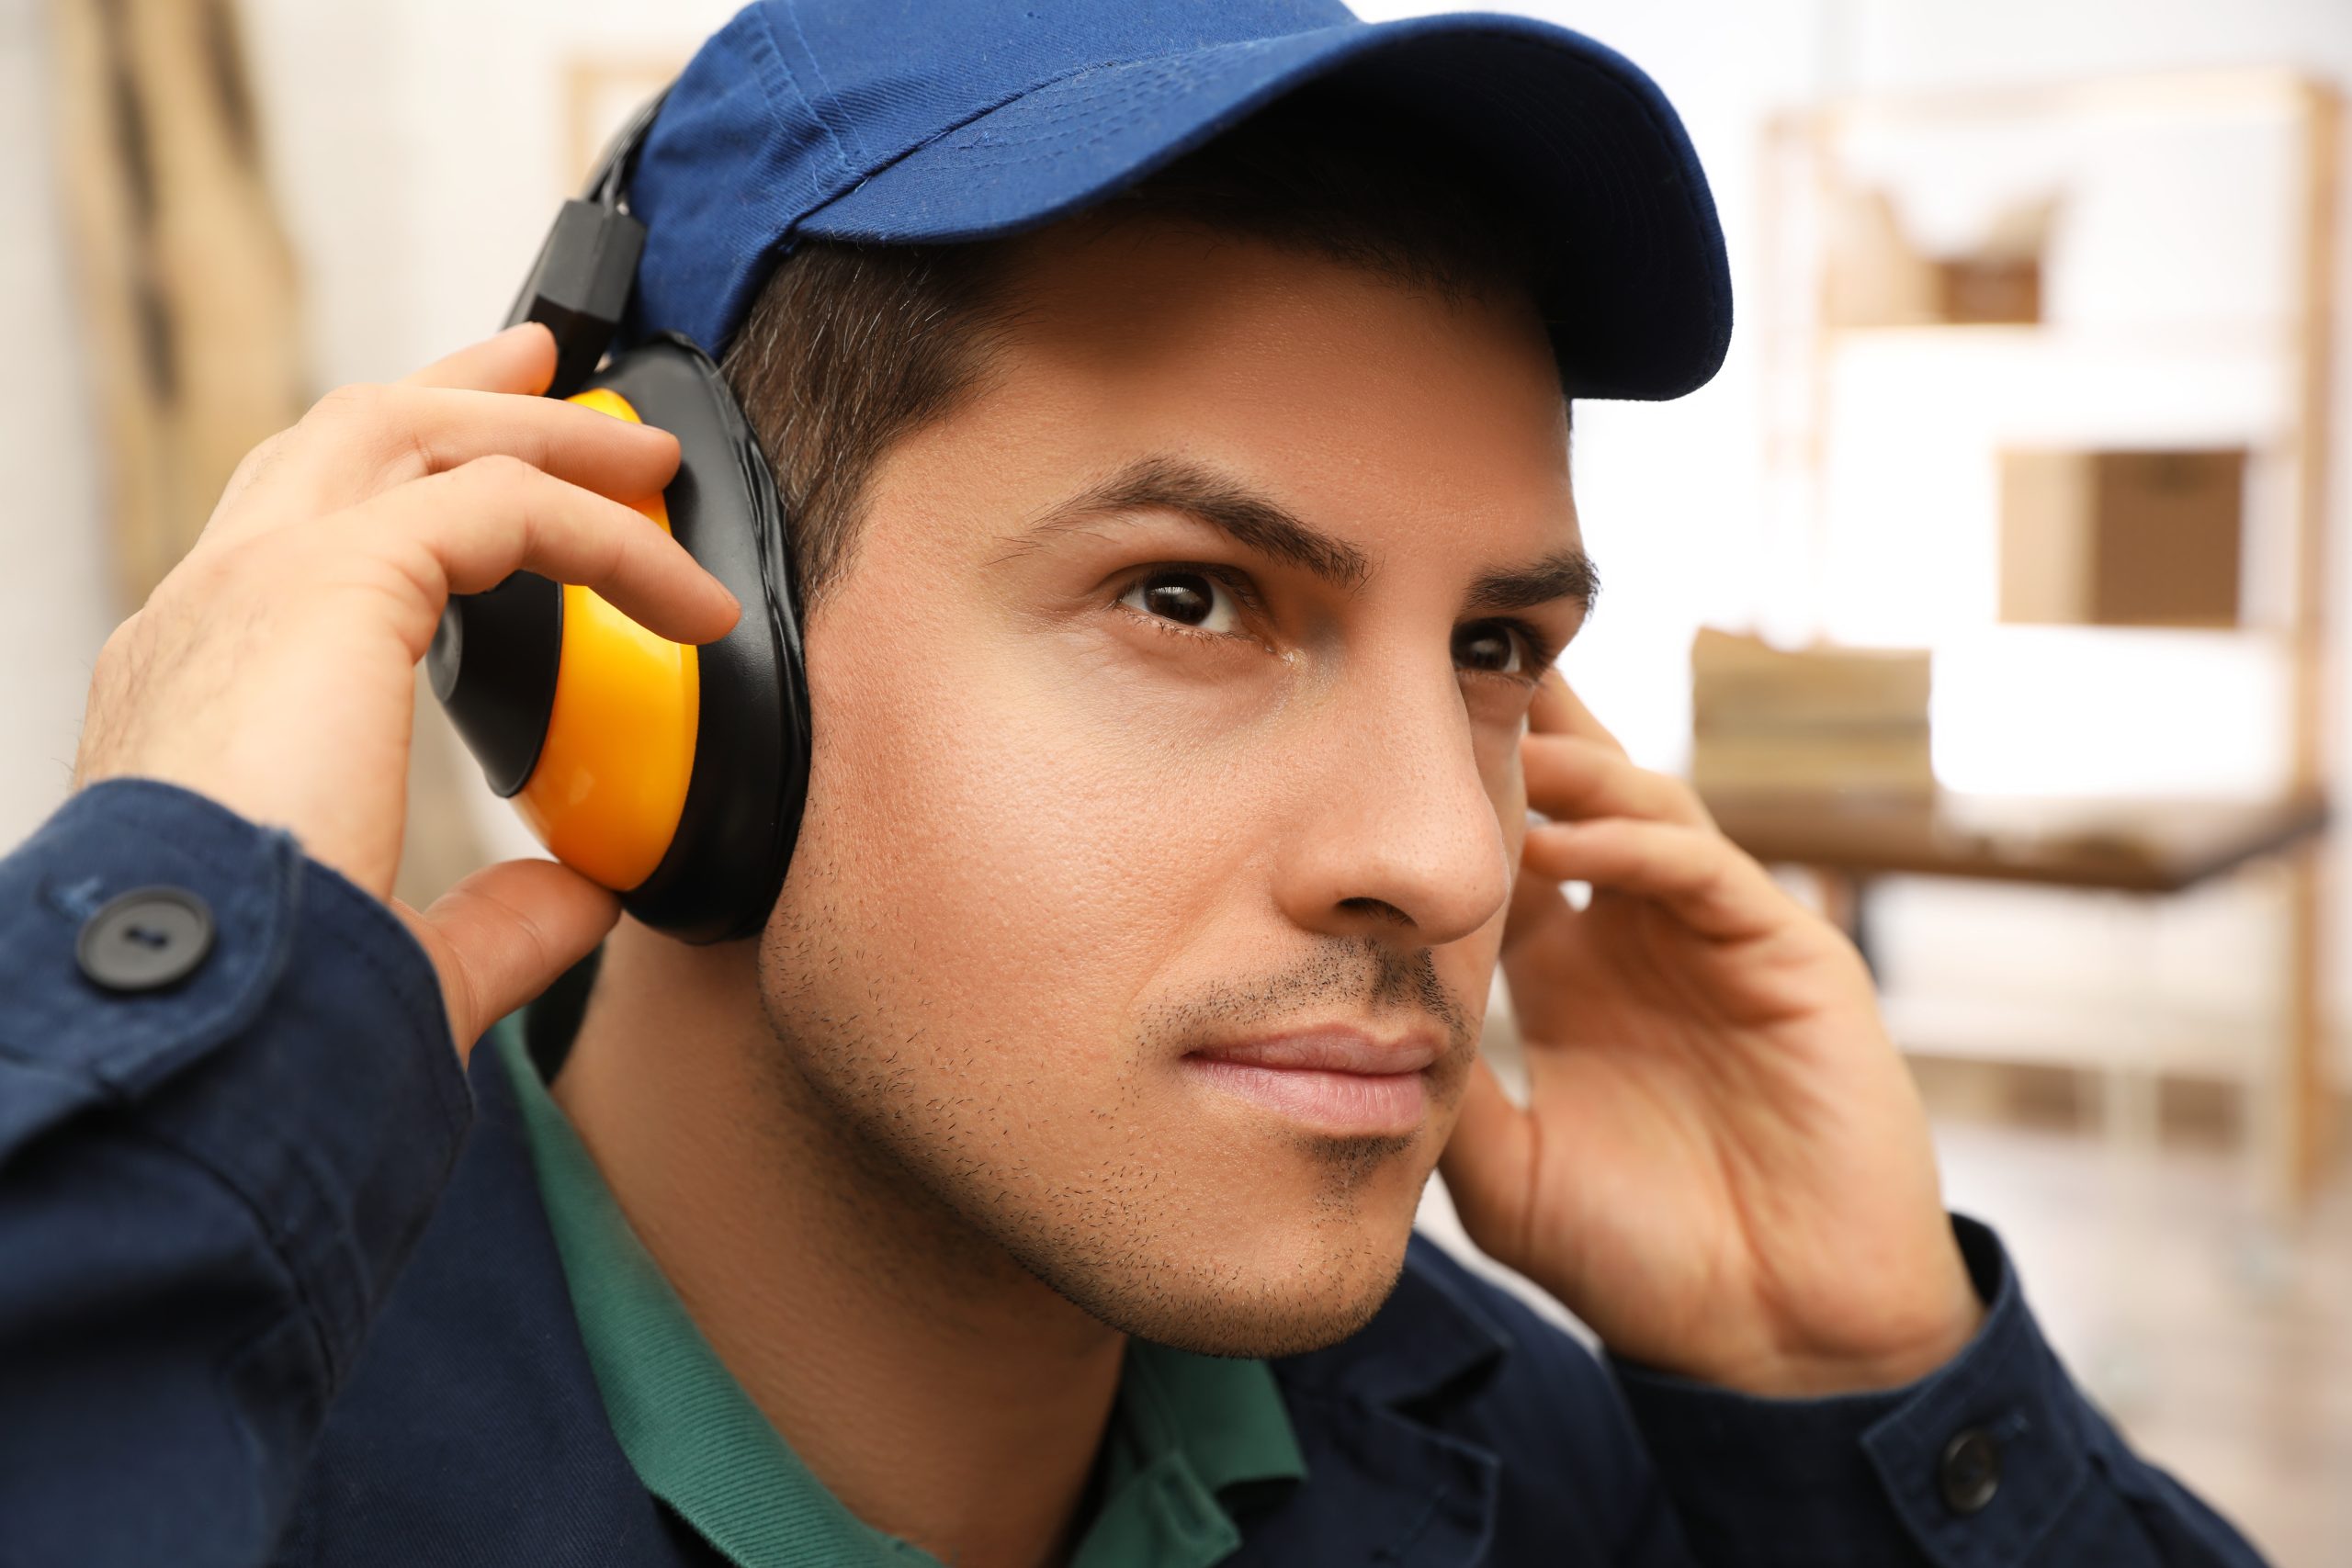 Protectores auditivos - Prevención y evaluación de la exposición al ruido